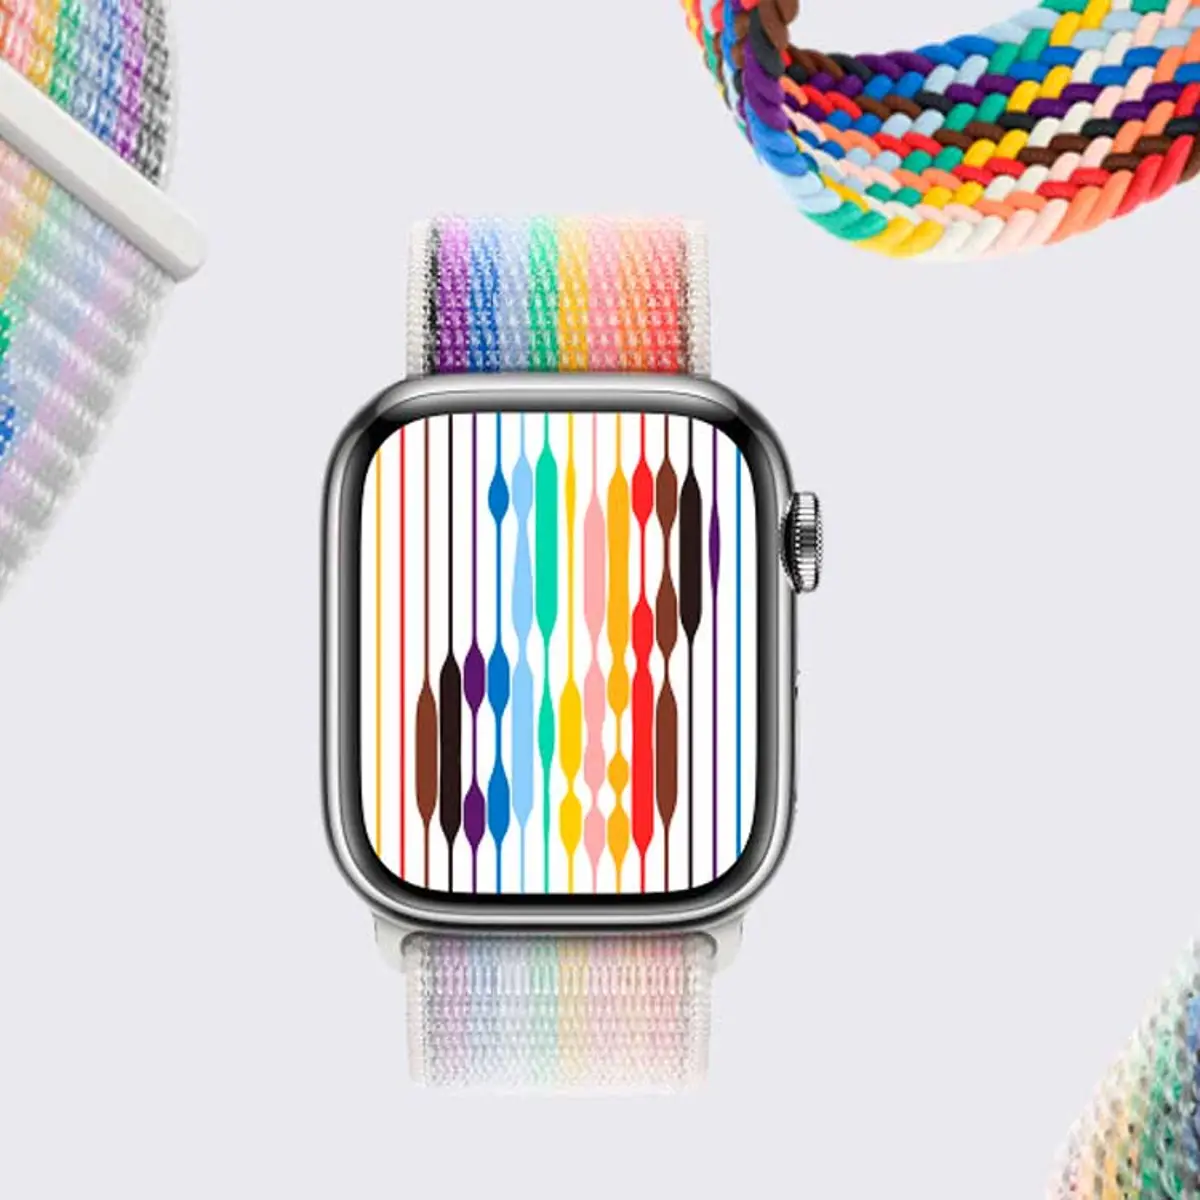 Apple lanza una colección de correas para su smartwatch inspirada